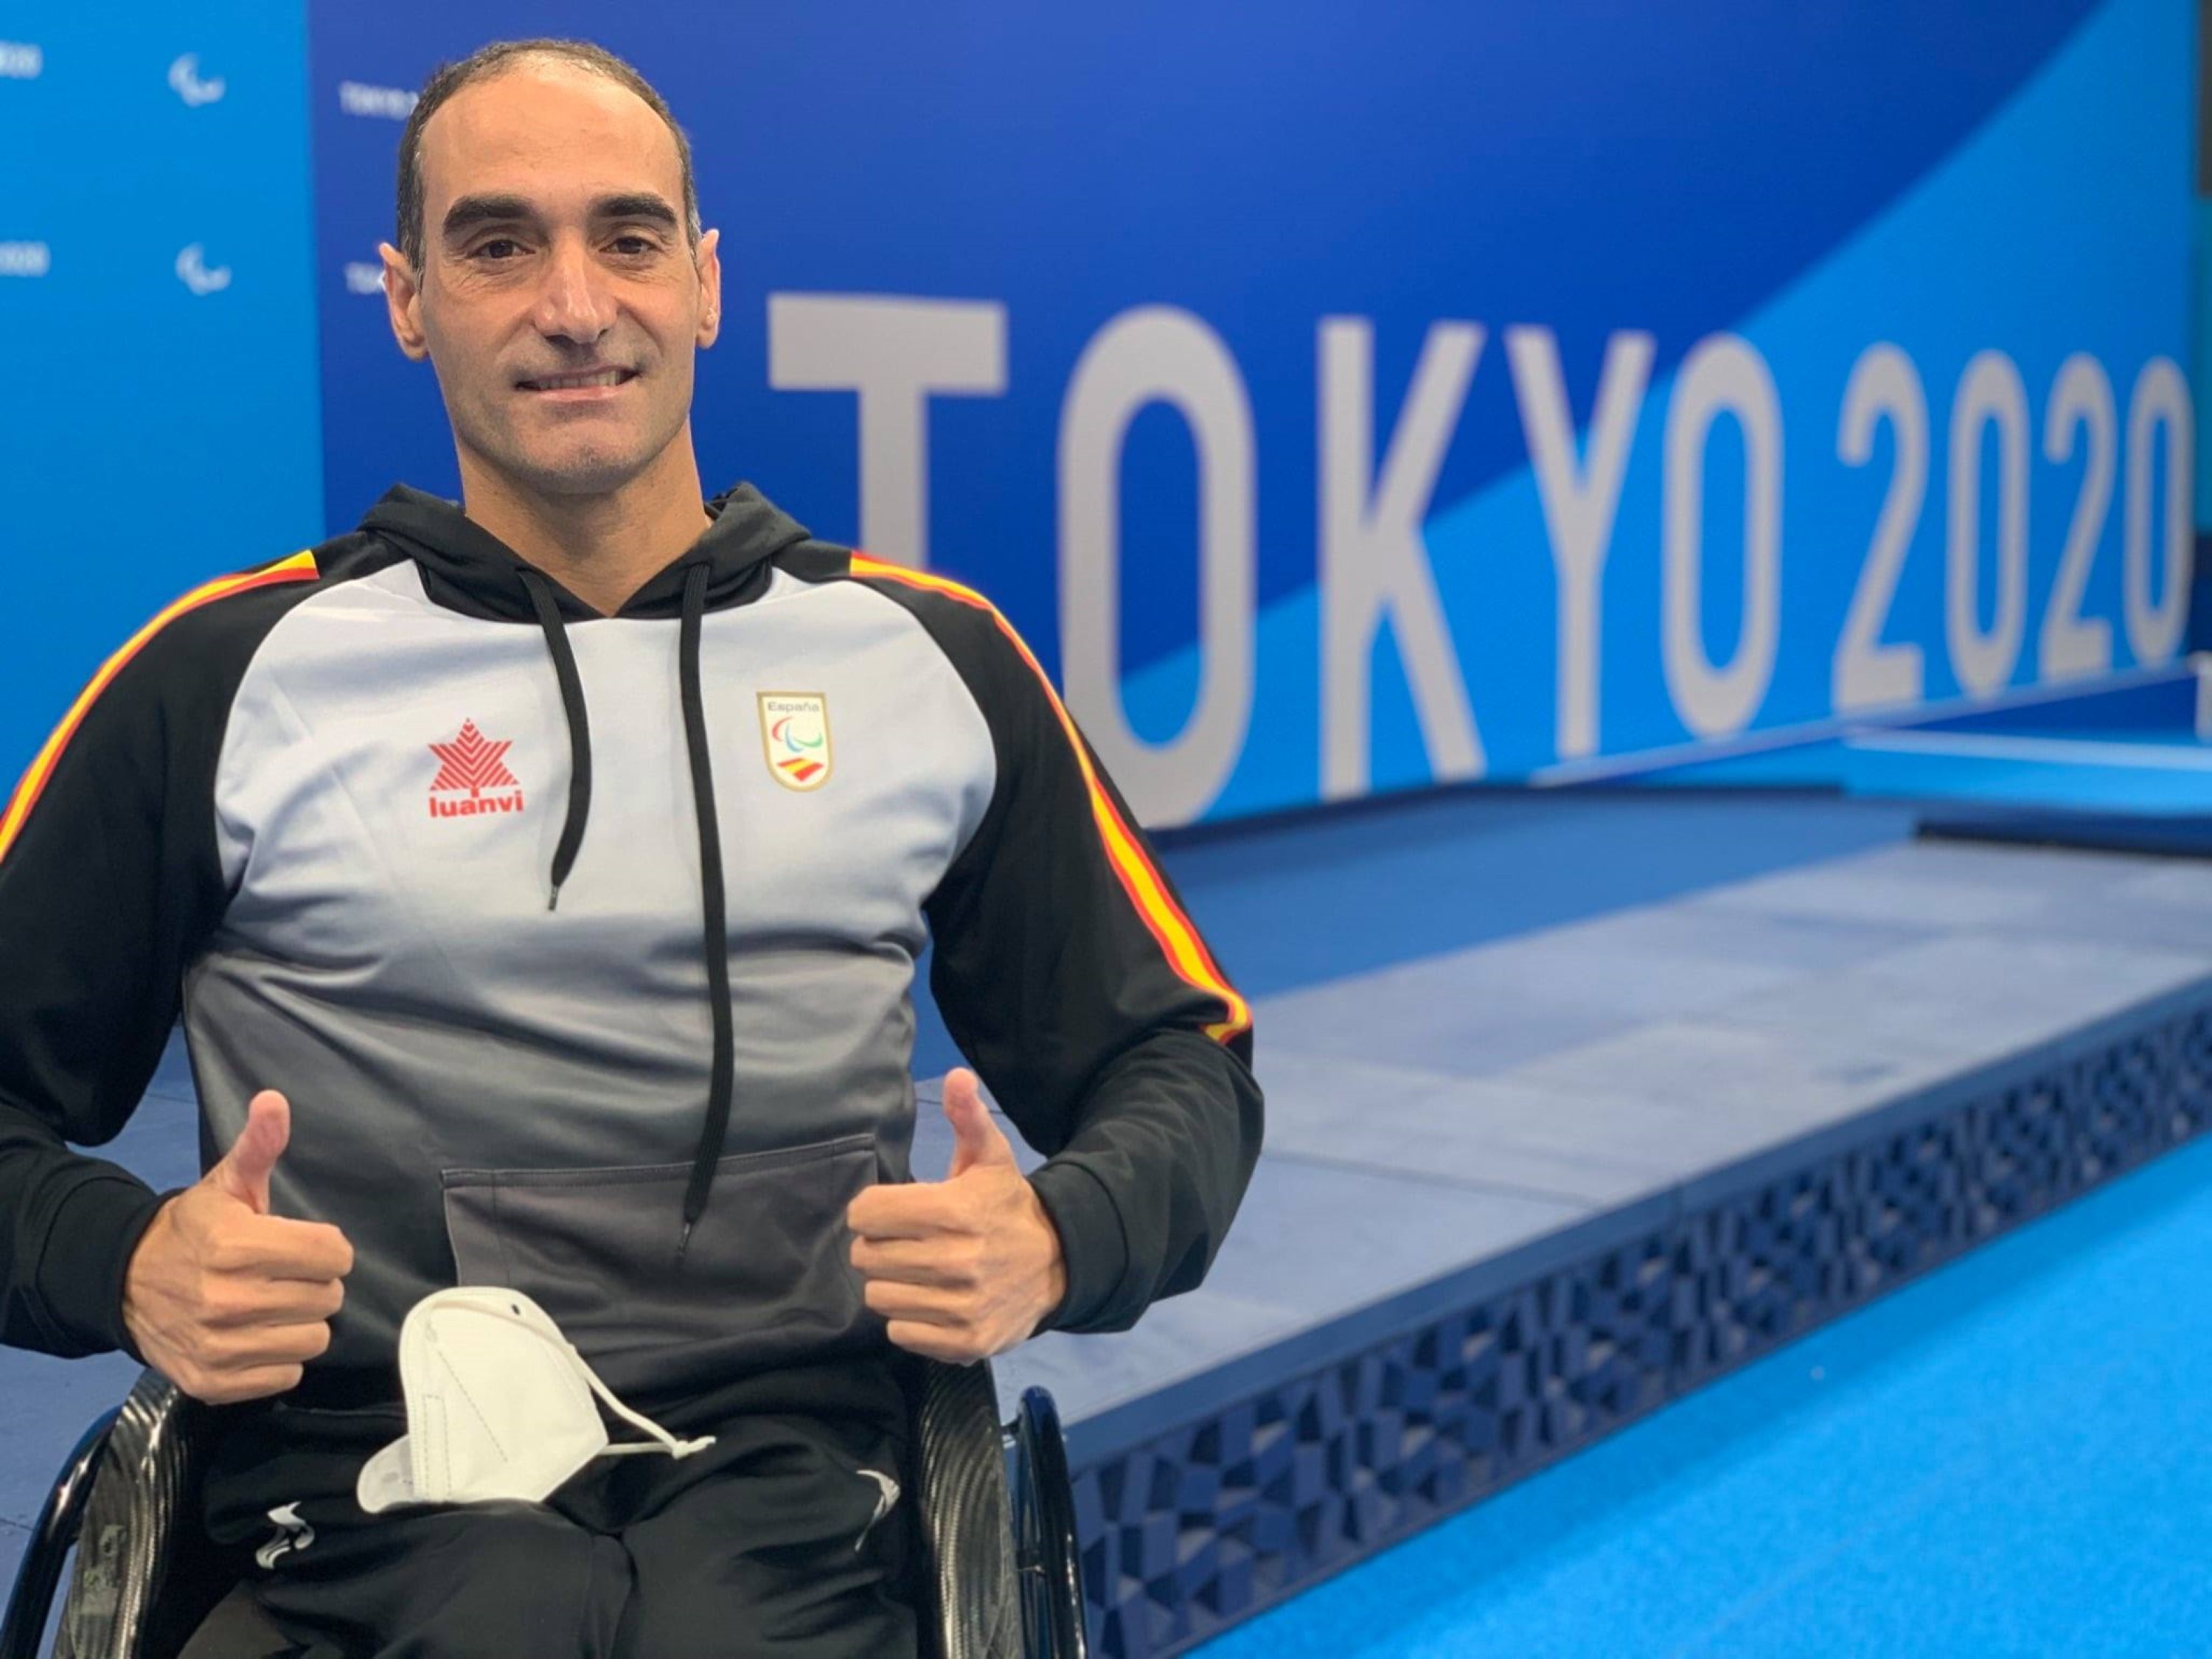 Miguel Luque, primera medalla catalana en los Juegos Paralímpicos de Tokio